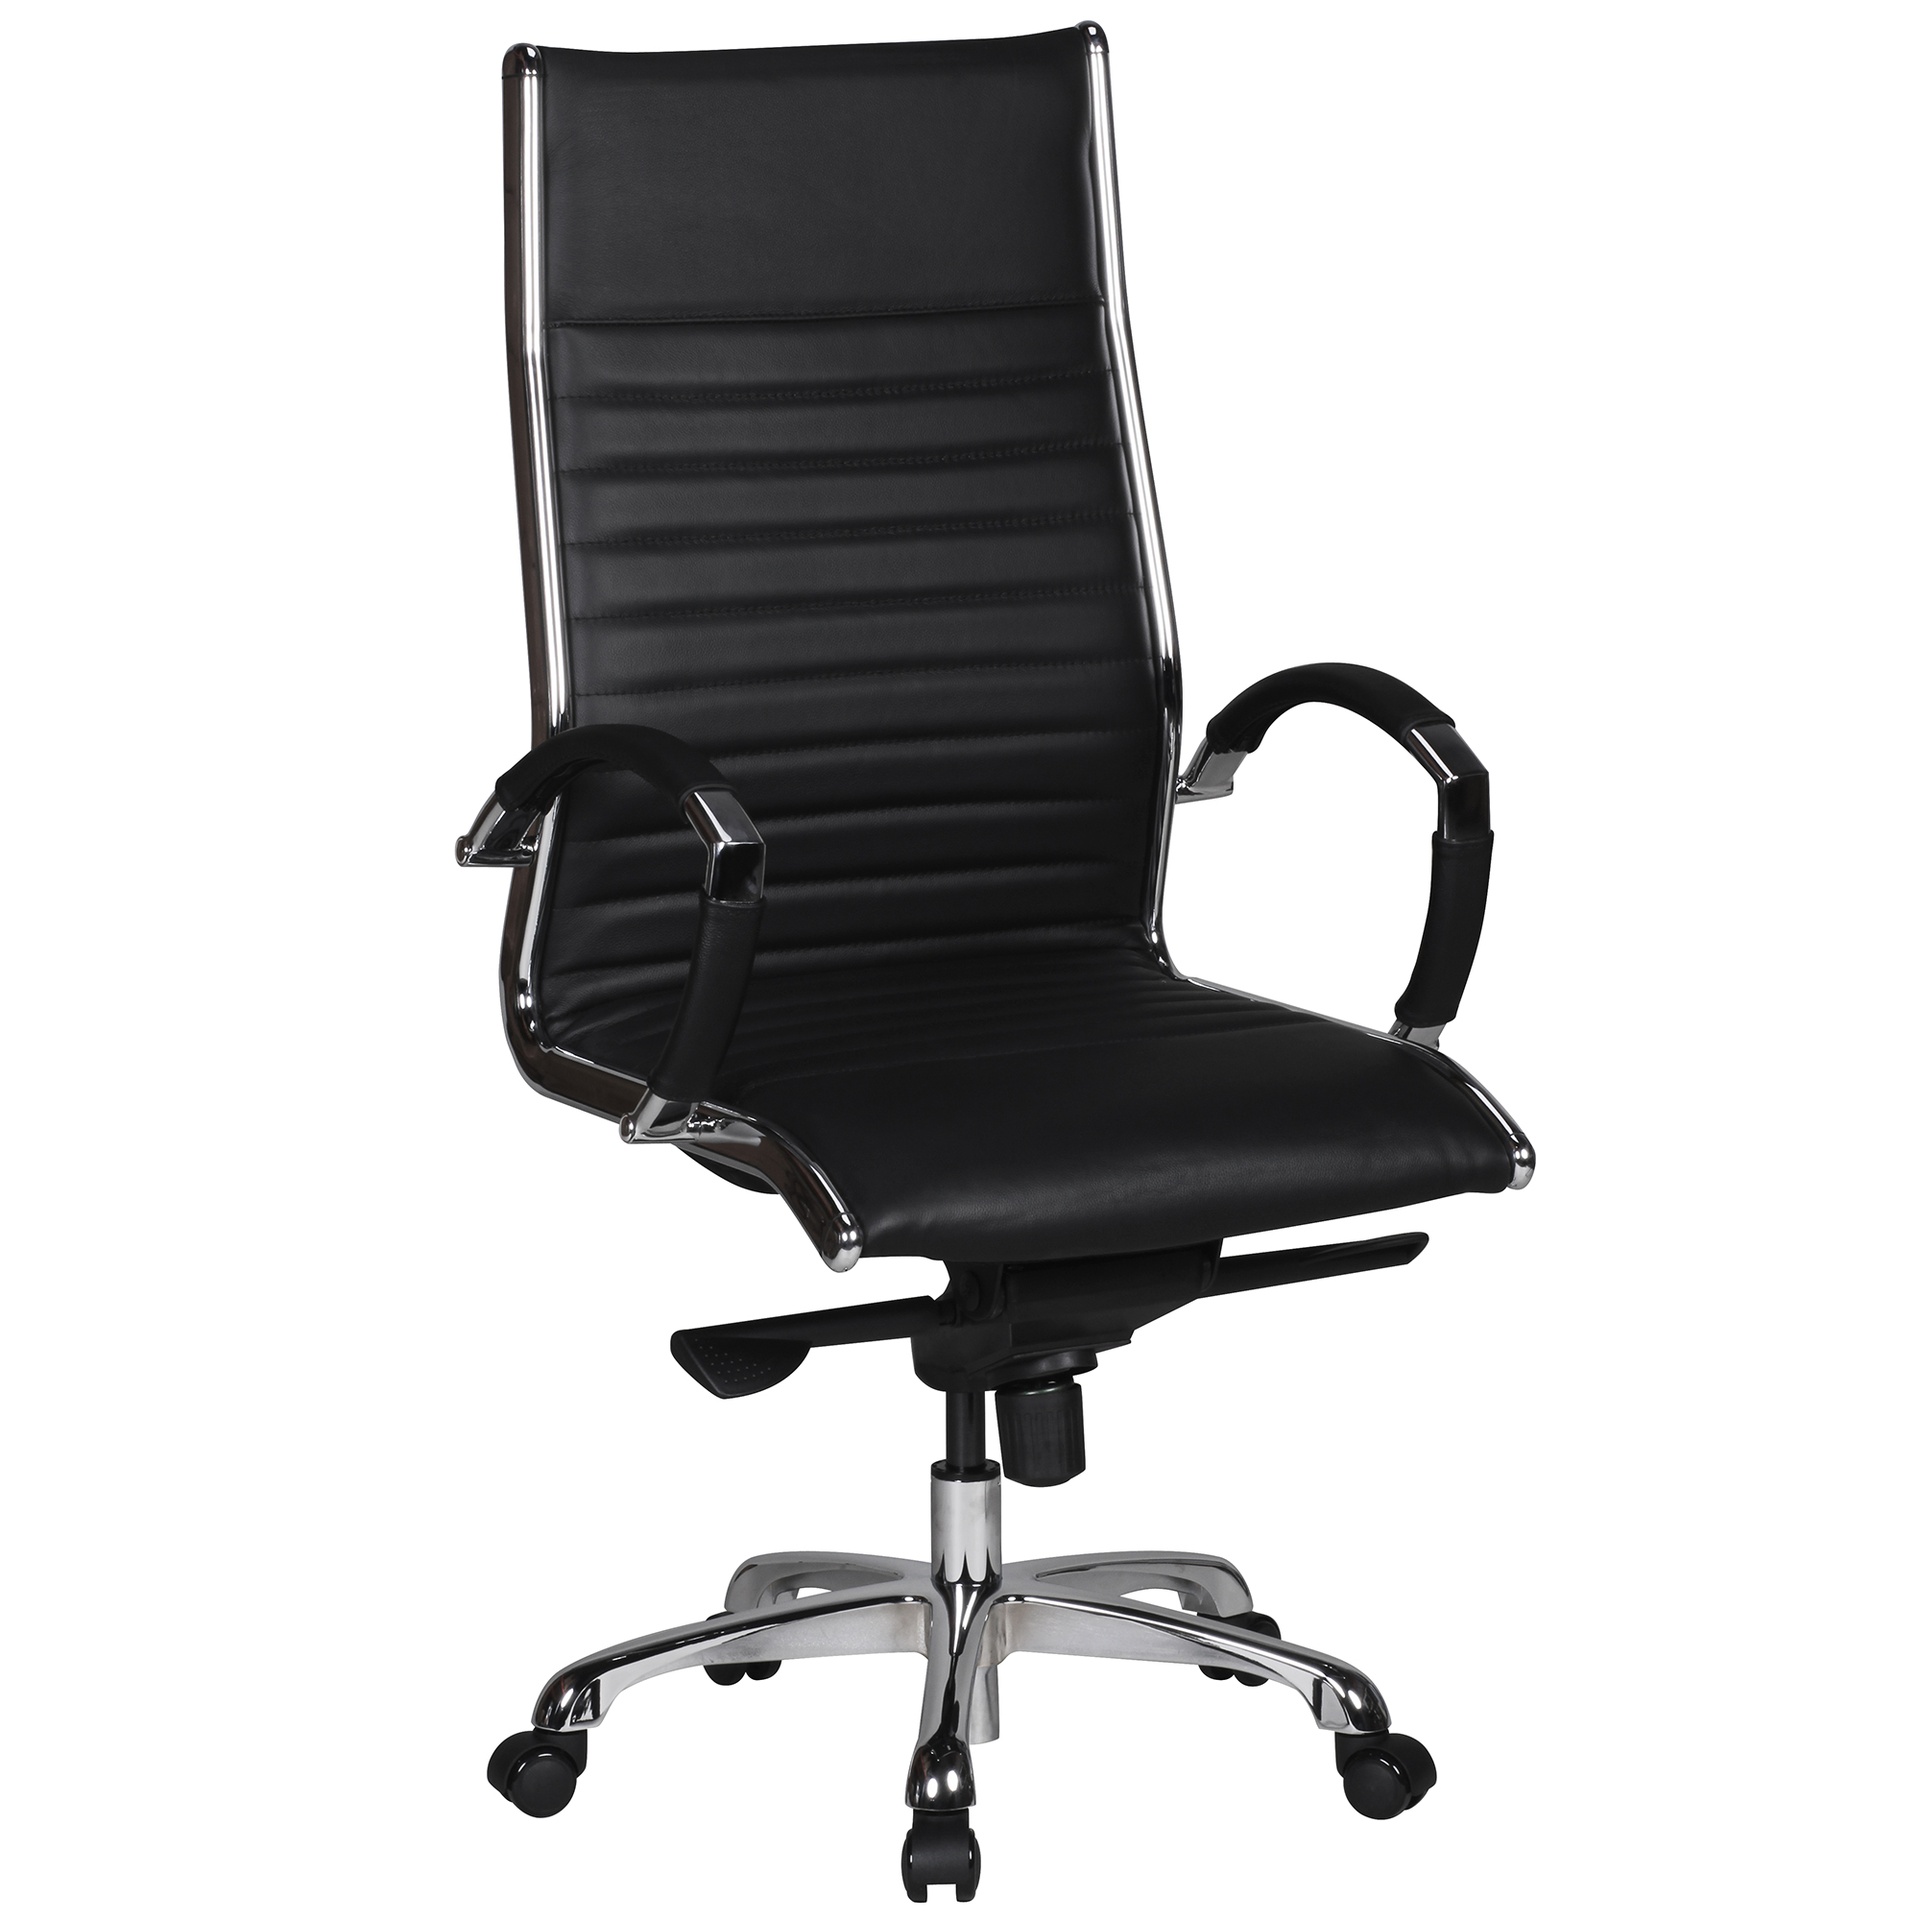 [A09440] Chaise de bureau Salzburg 1 revêtement cuir véritable noir